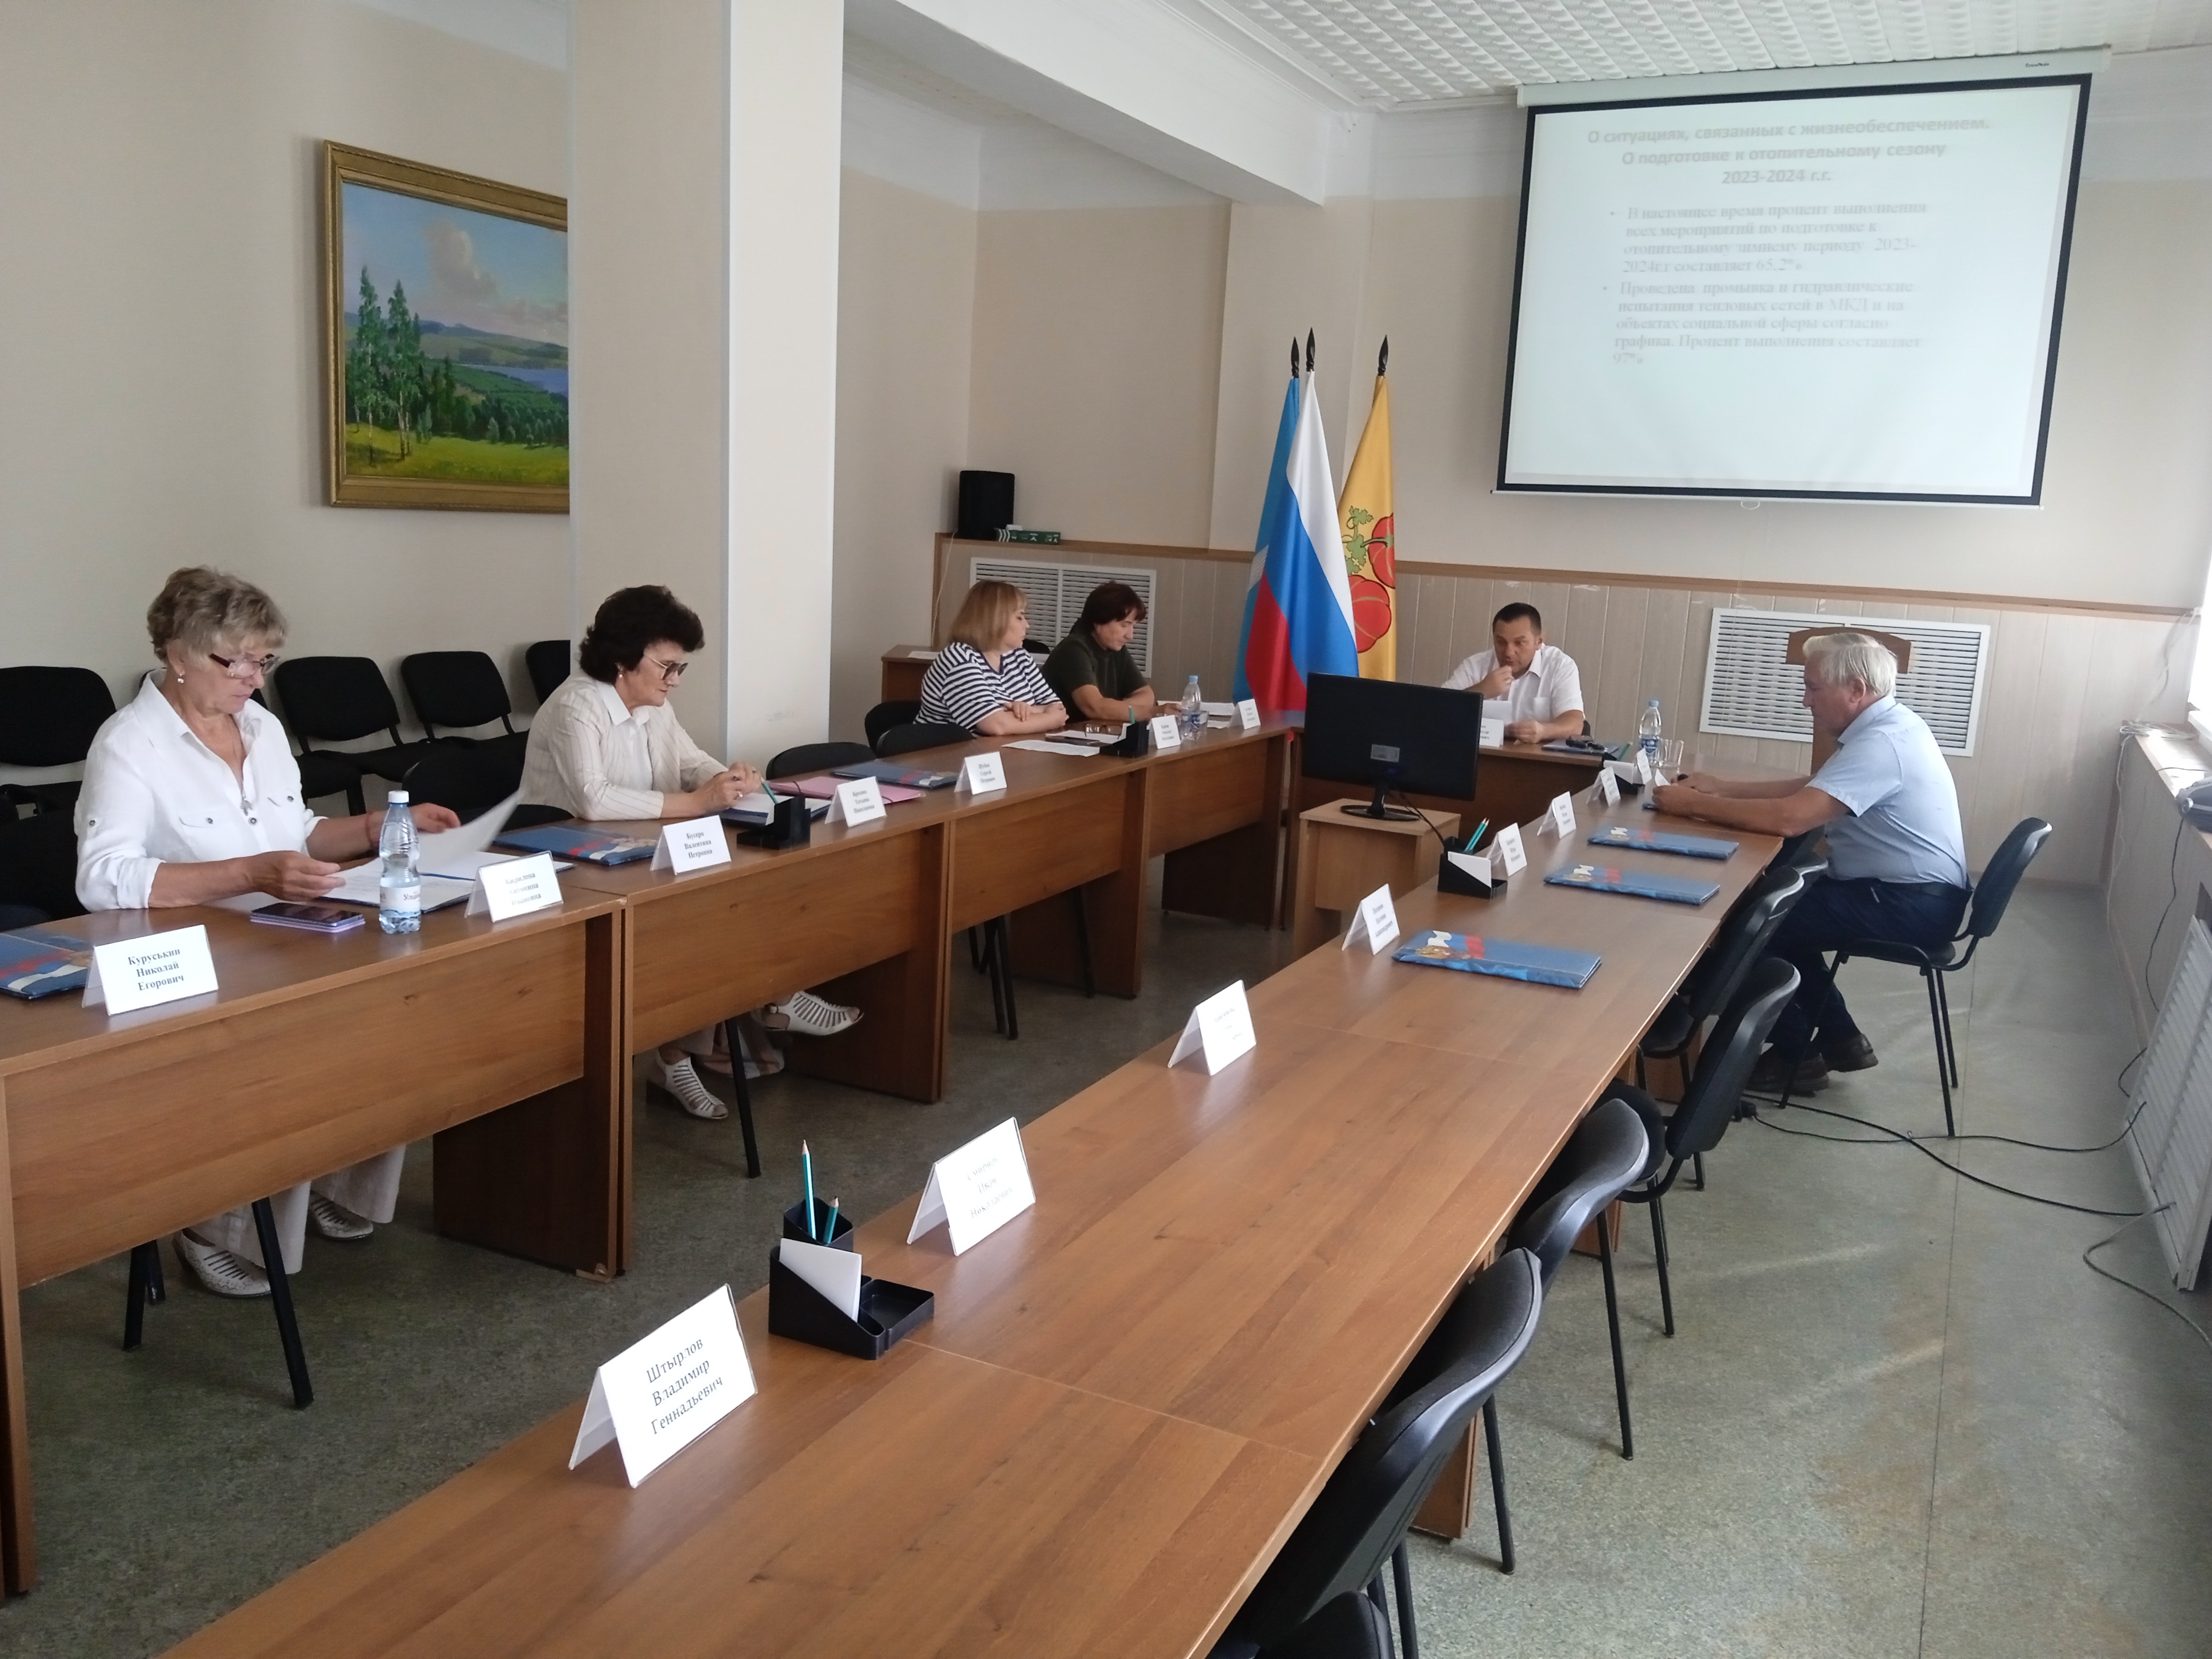 Заседание комиссии по бюджетной политике и управлению муниципальным имуществом Совета депутатов муниципального образования «Сенгилеевский район».